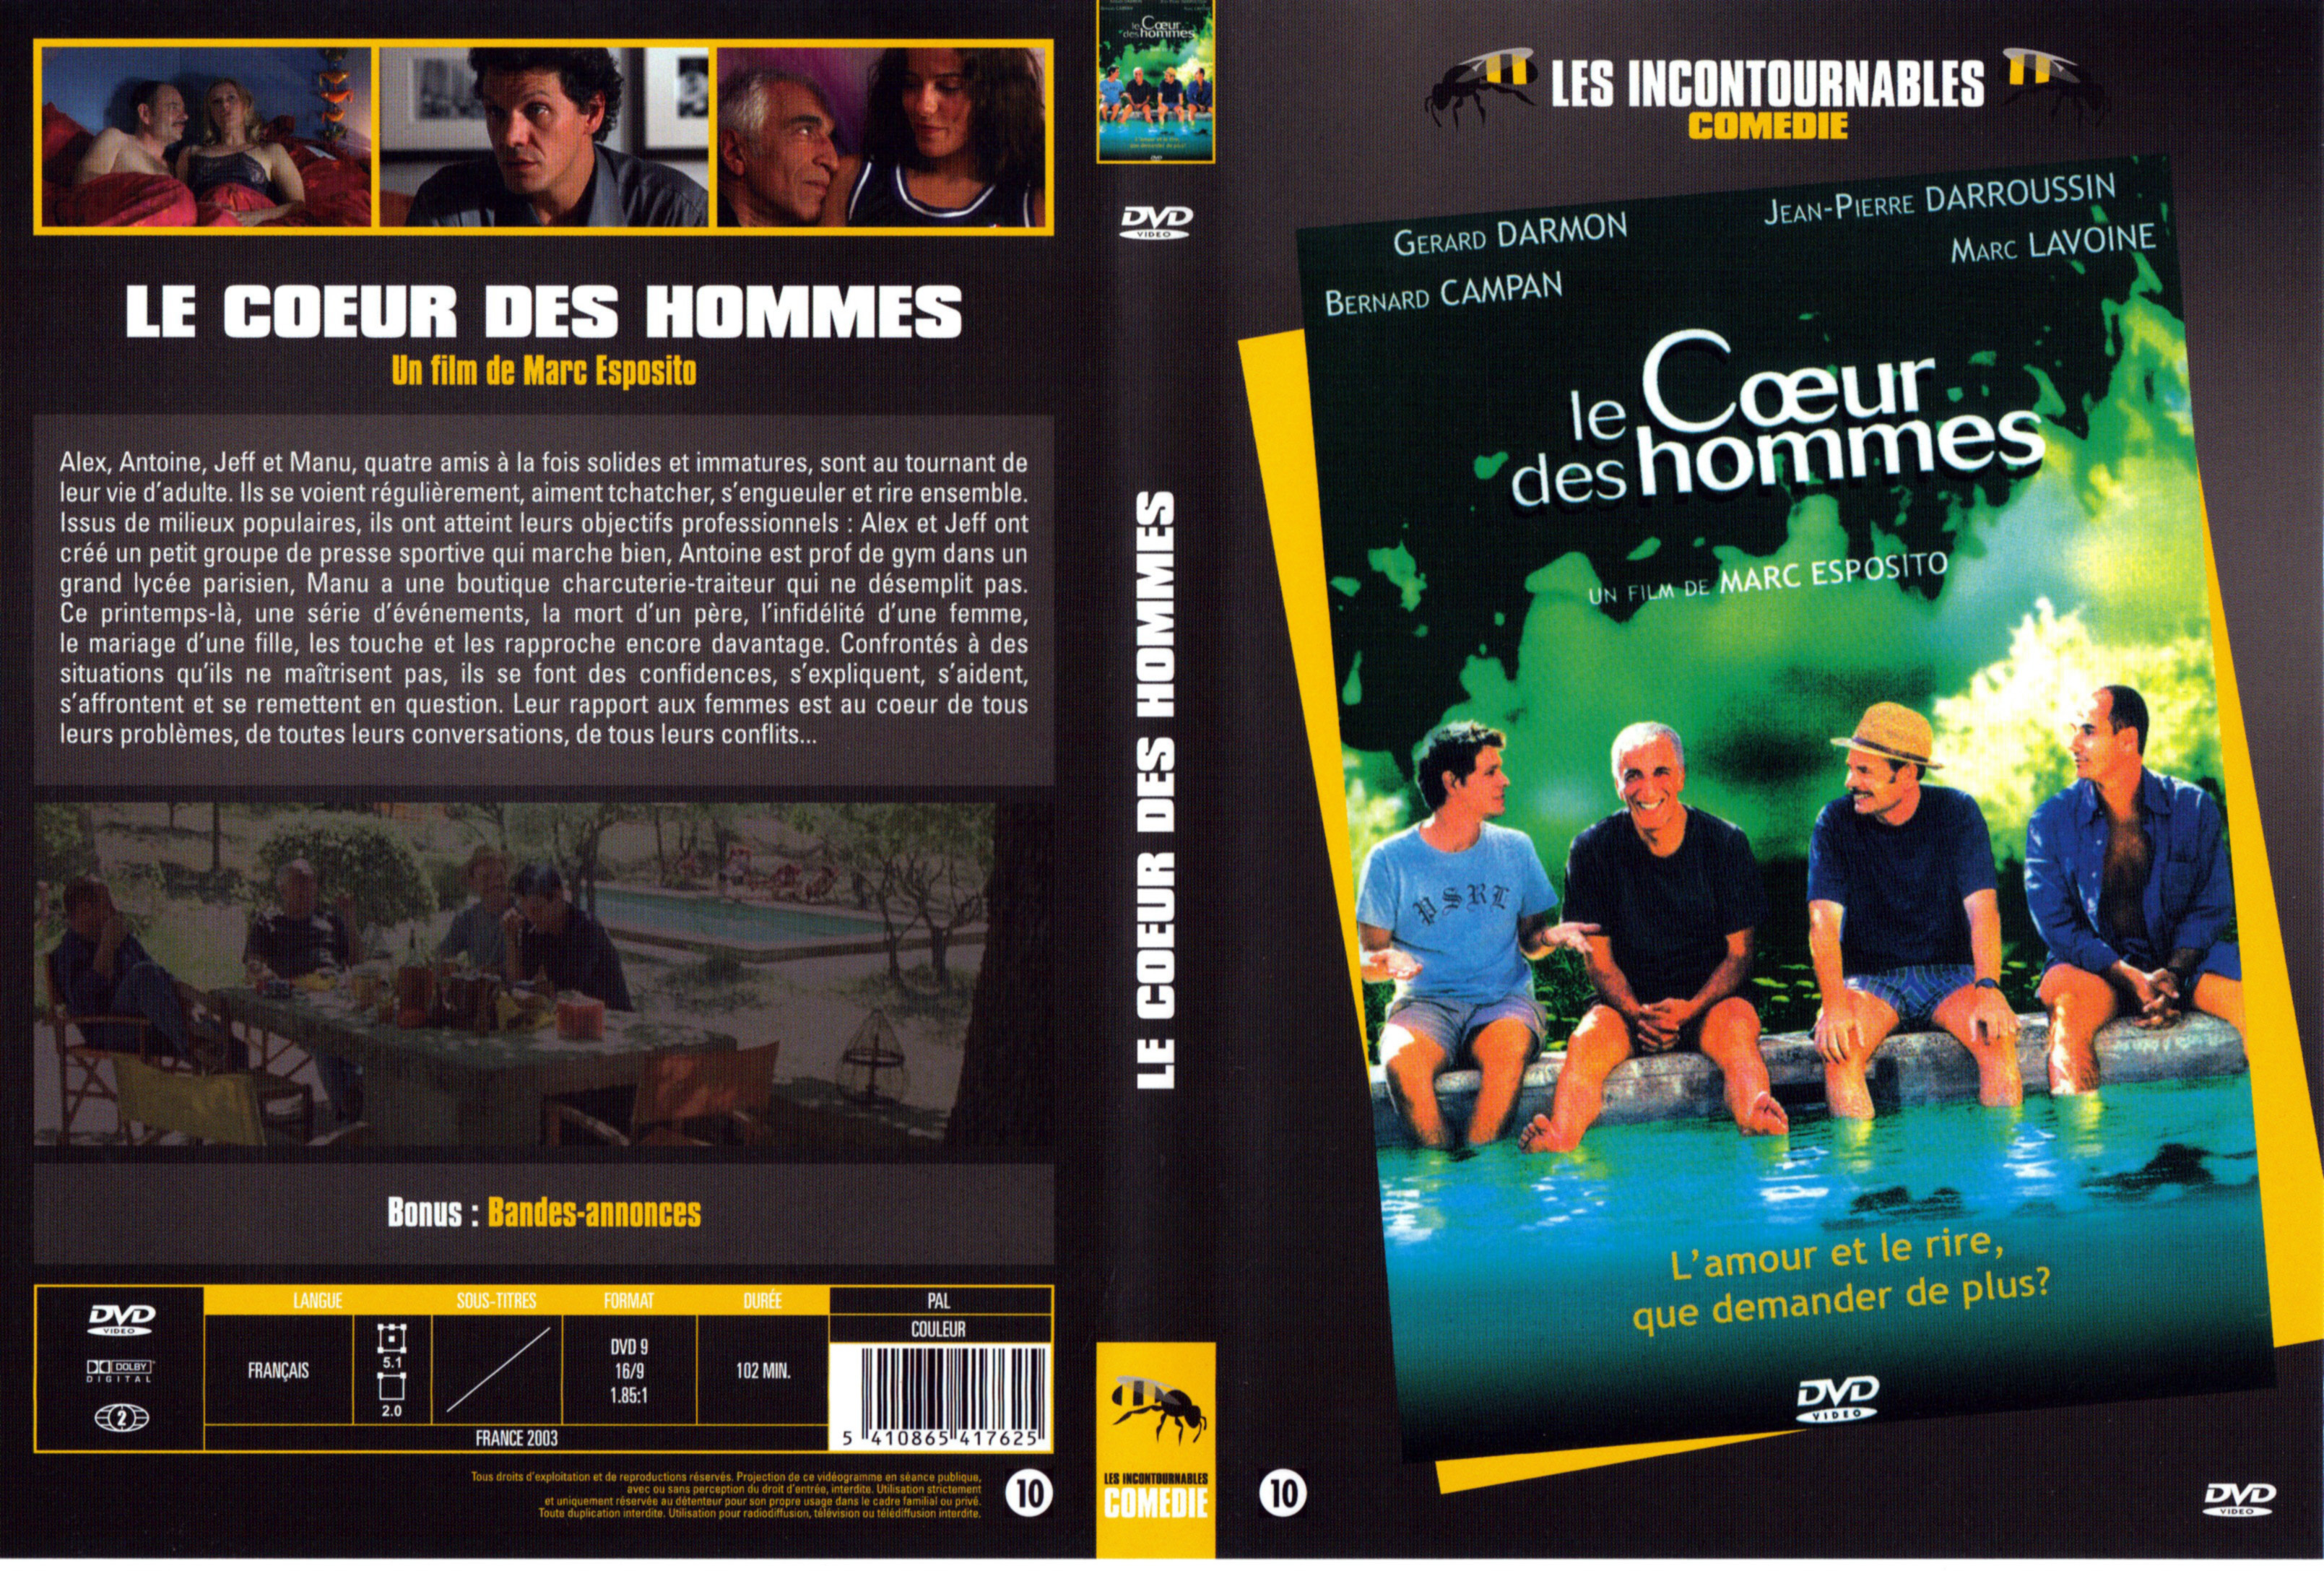 Jaquette DVD Le coeur des hommes v2